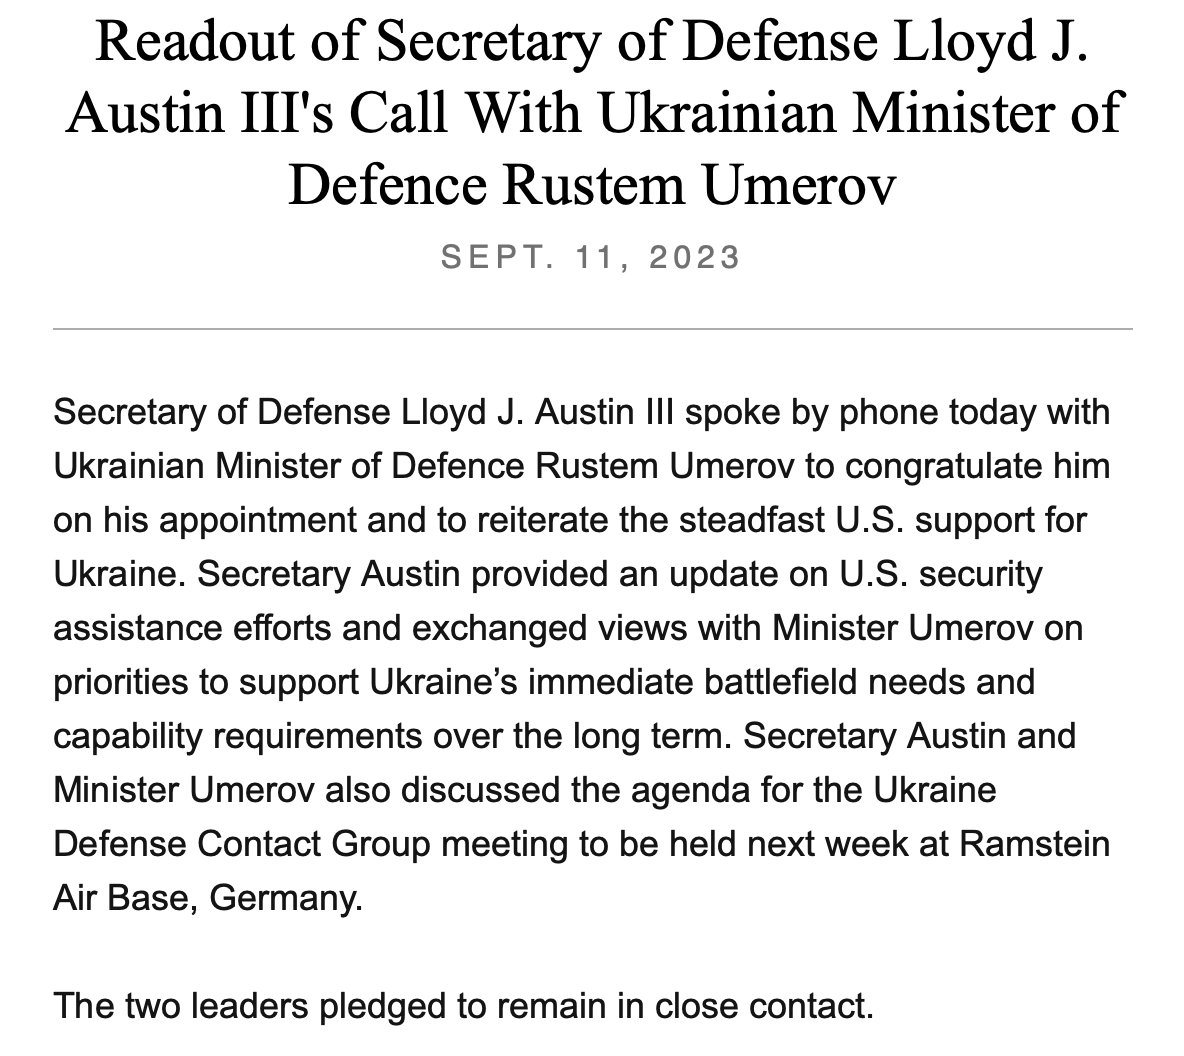 SUA @SecDef Lloyd Austin a vorbit luni cu noul ministru al Apărării din Ucraina, Rustem Umerov, conform @DeptofDefense. Apelul a fost de a „reitera sprijinul ferm al SUA pentru Ucraina și de a oferi lui Umerov o actualizare a asistenței SUA.